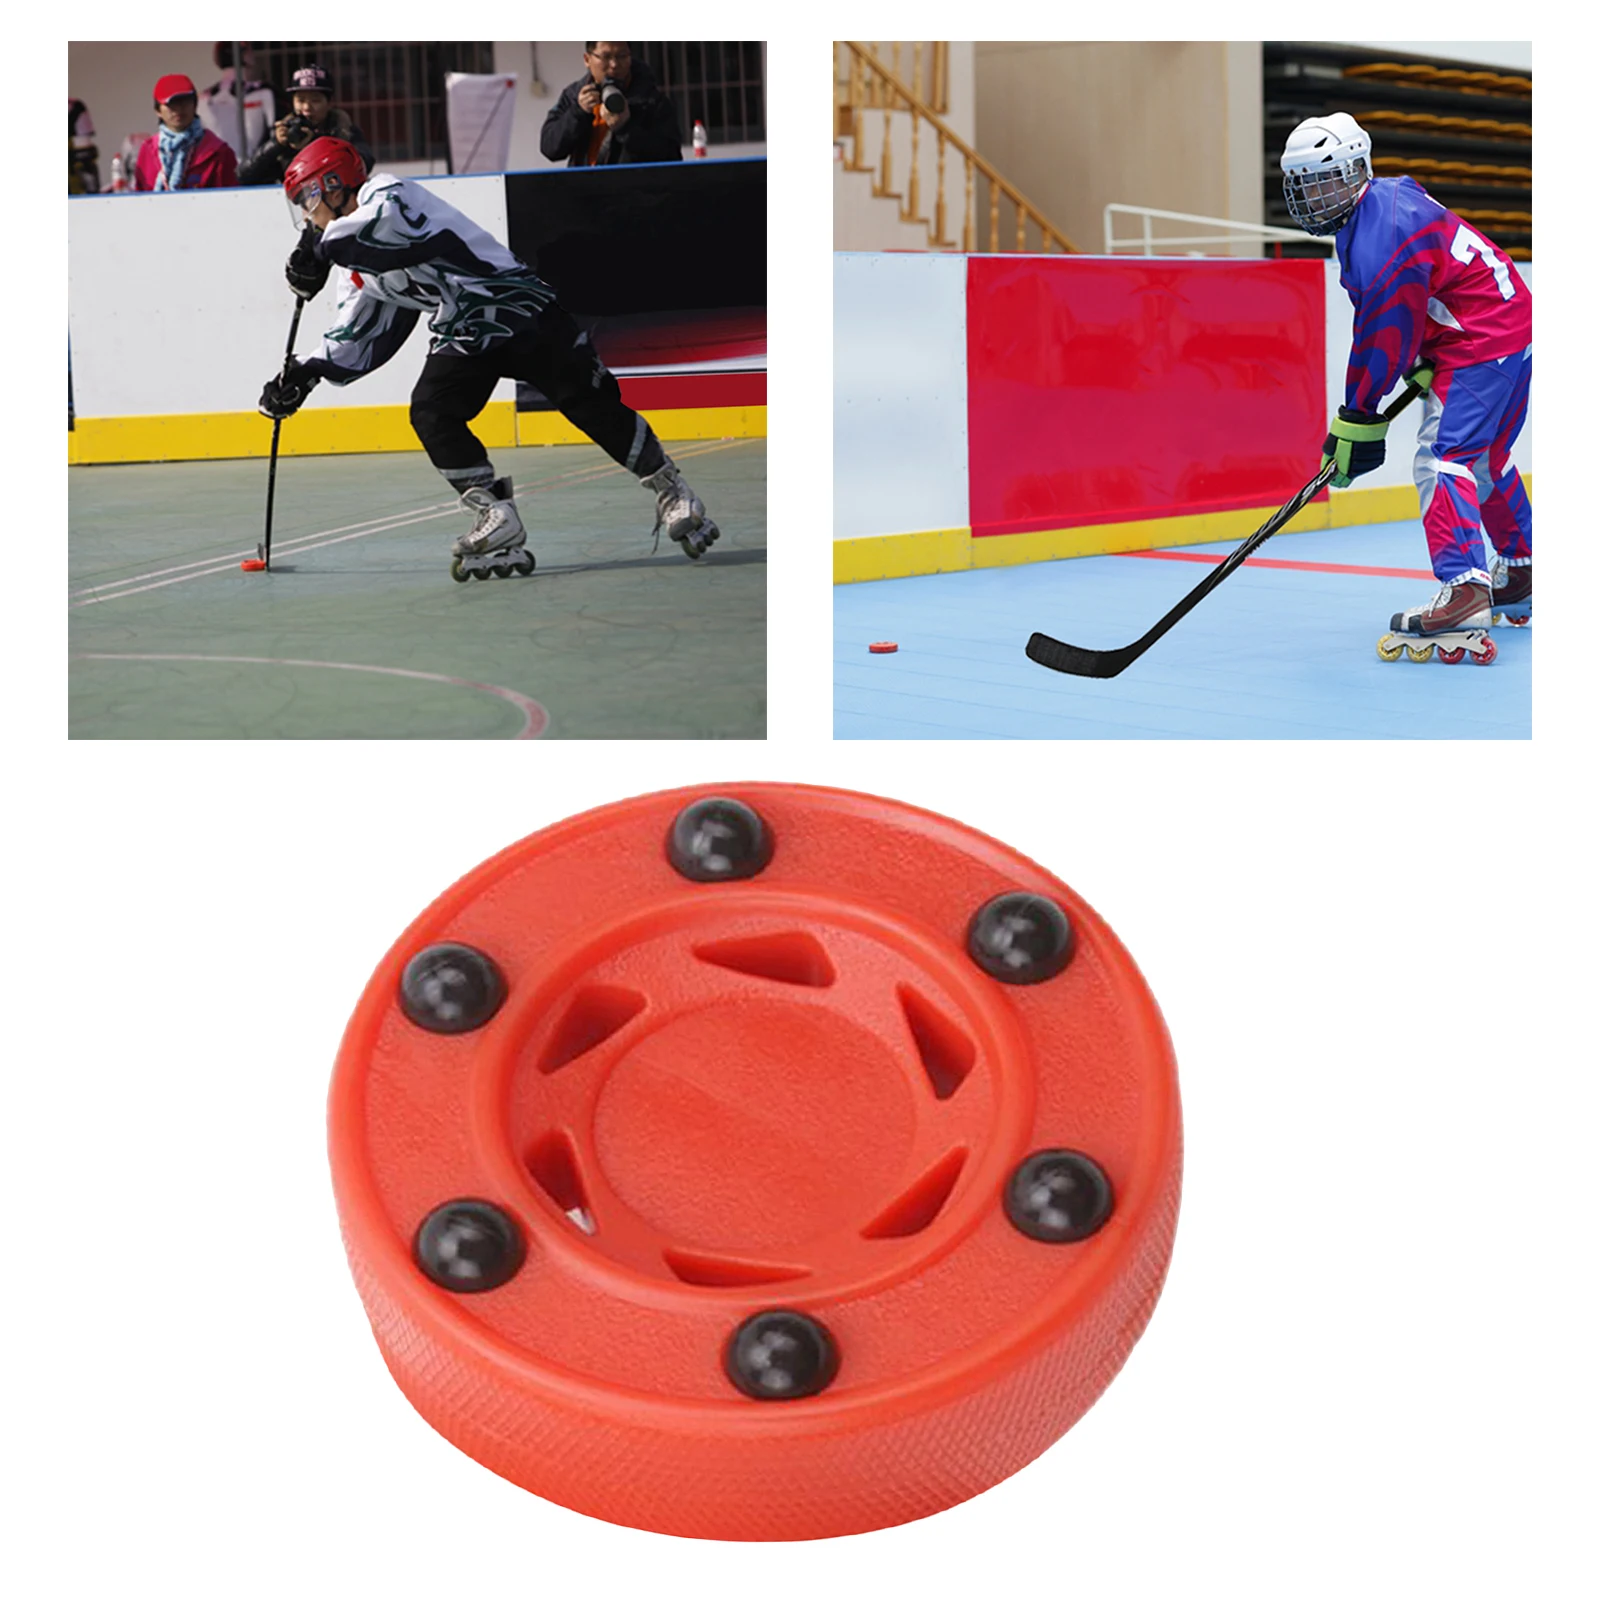 

Спортивные клюшки для хоккея с шайбой, диаметр 7,5 см, для практики и классических тренировок, диаметр 3 дюйма, толщина 1 дюйма